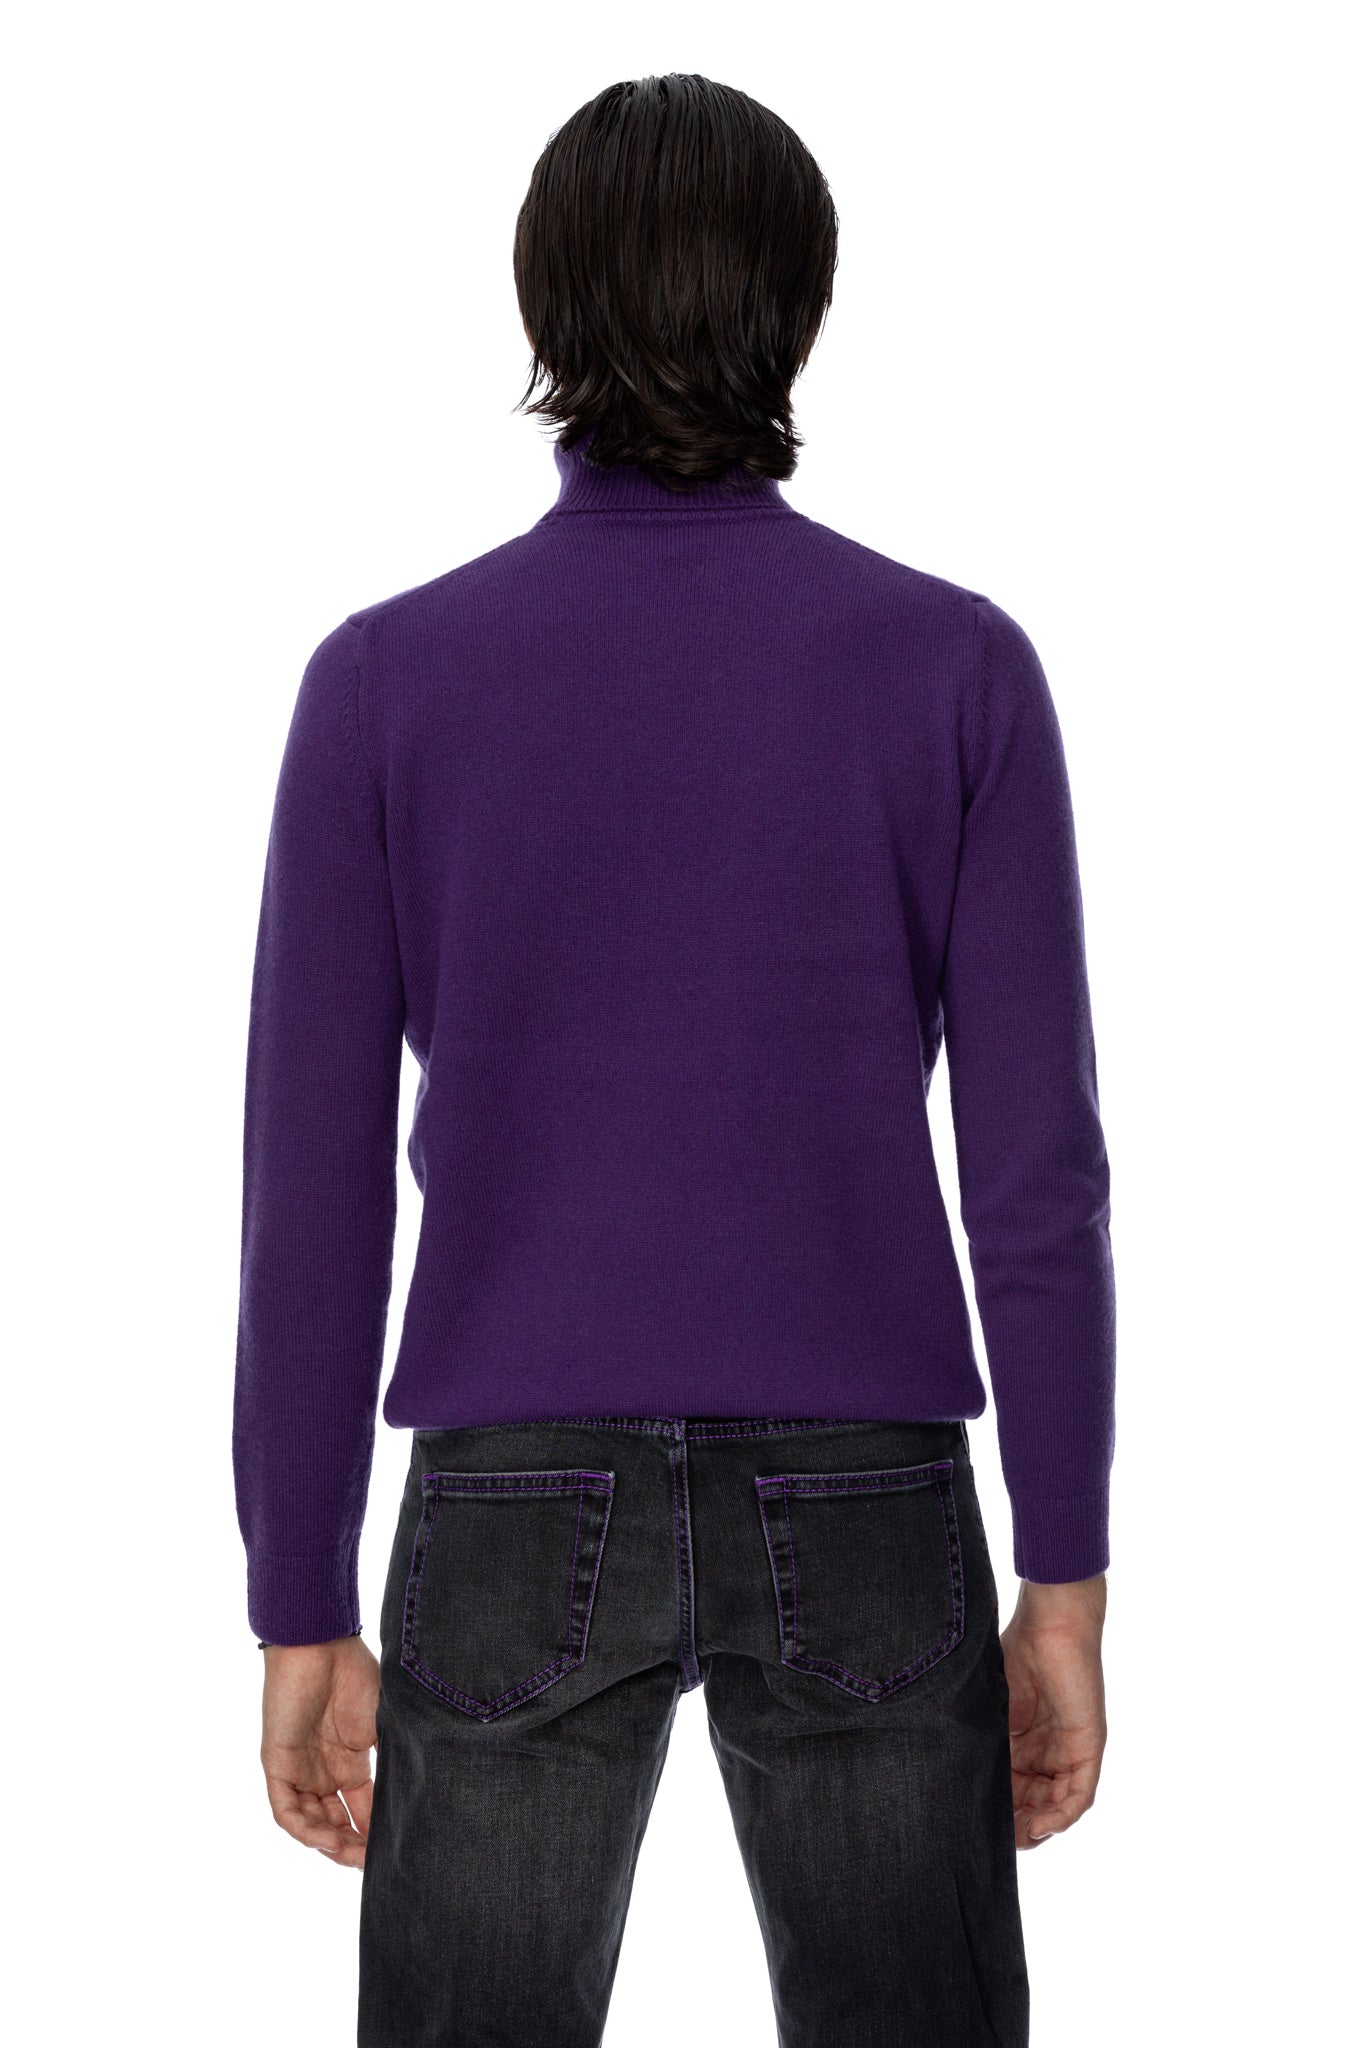 Purple cashmere turtleneck sweater